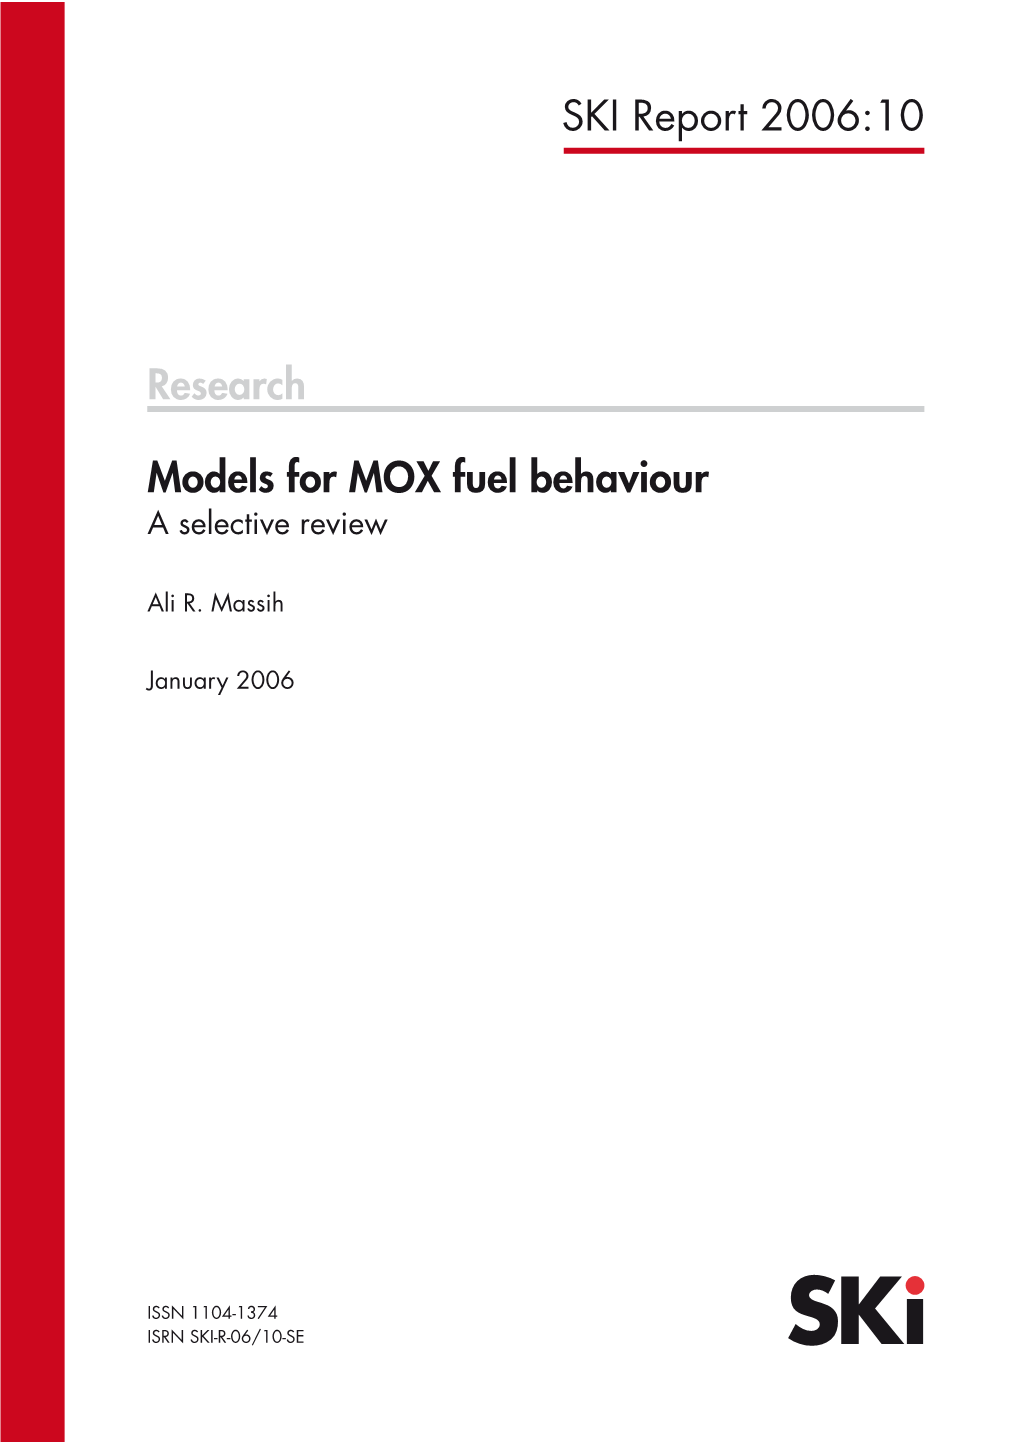 2006:10 Models for MOX Fuel Behaviour